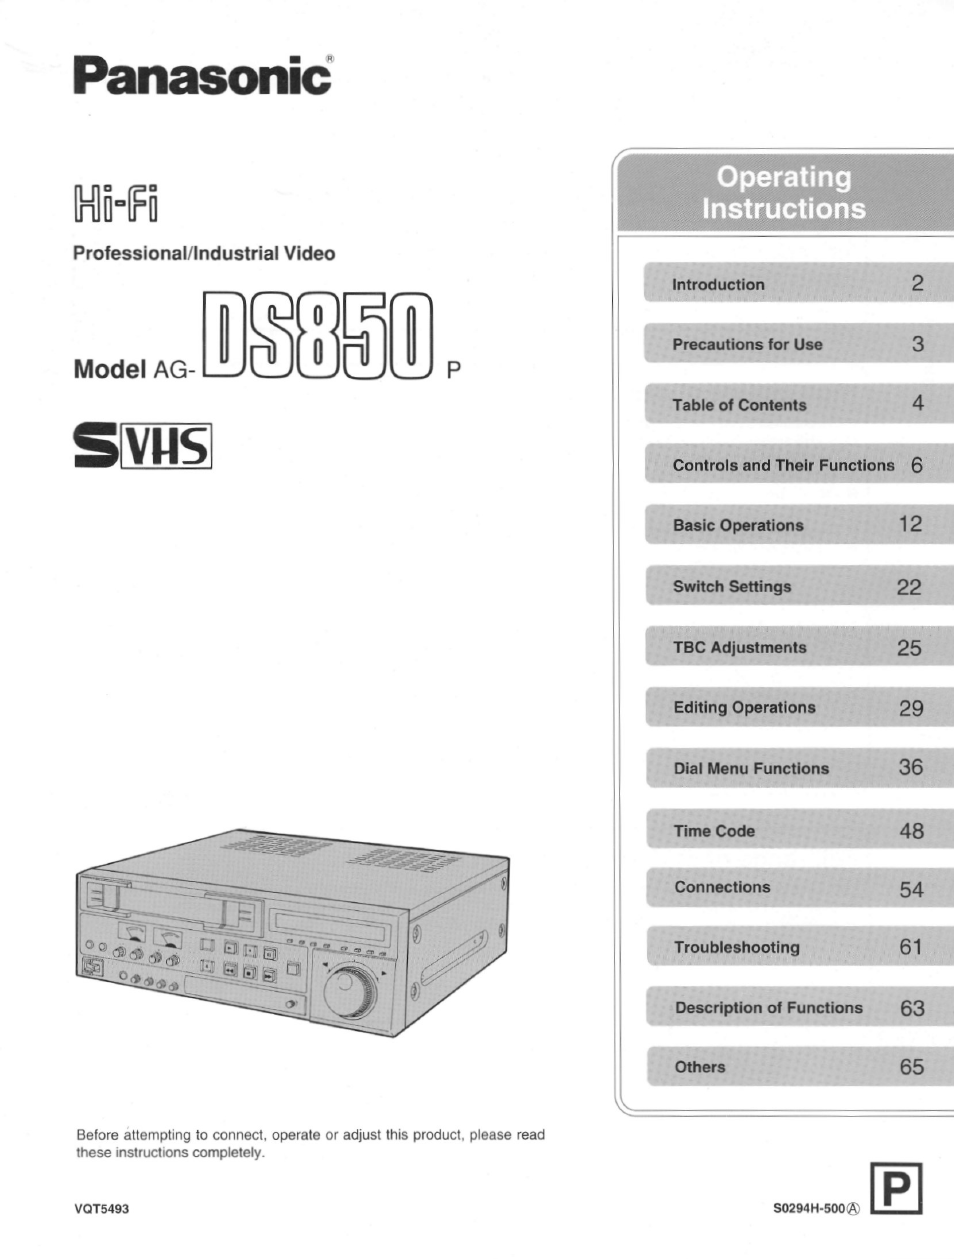 Panasonic Hi-Fi Professional/Industrial Video DS850 Manuel d'utilisation | Pages: 136